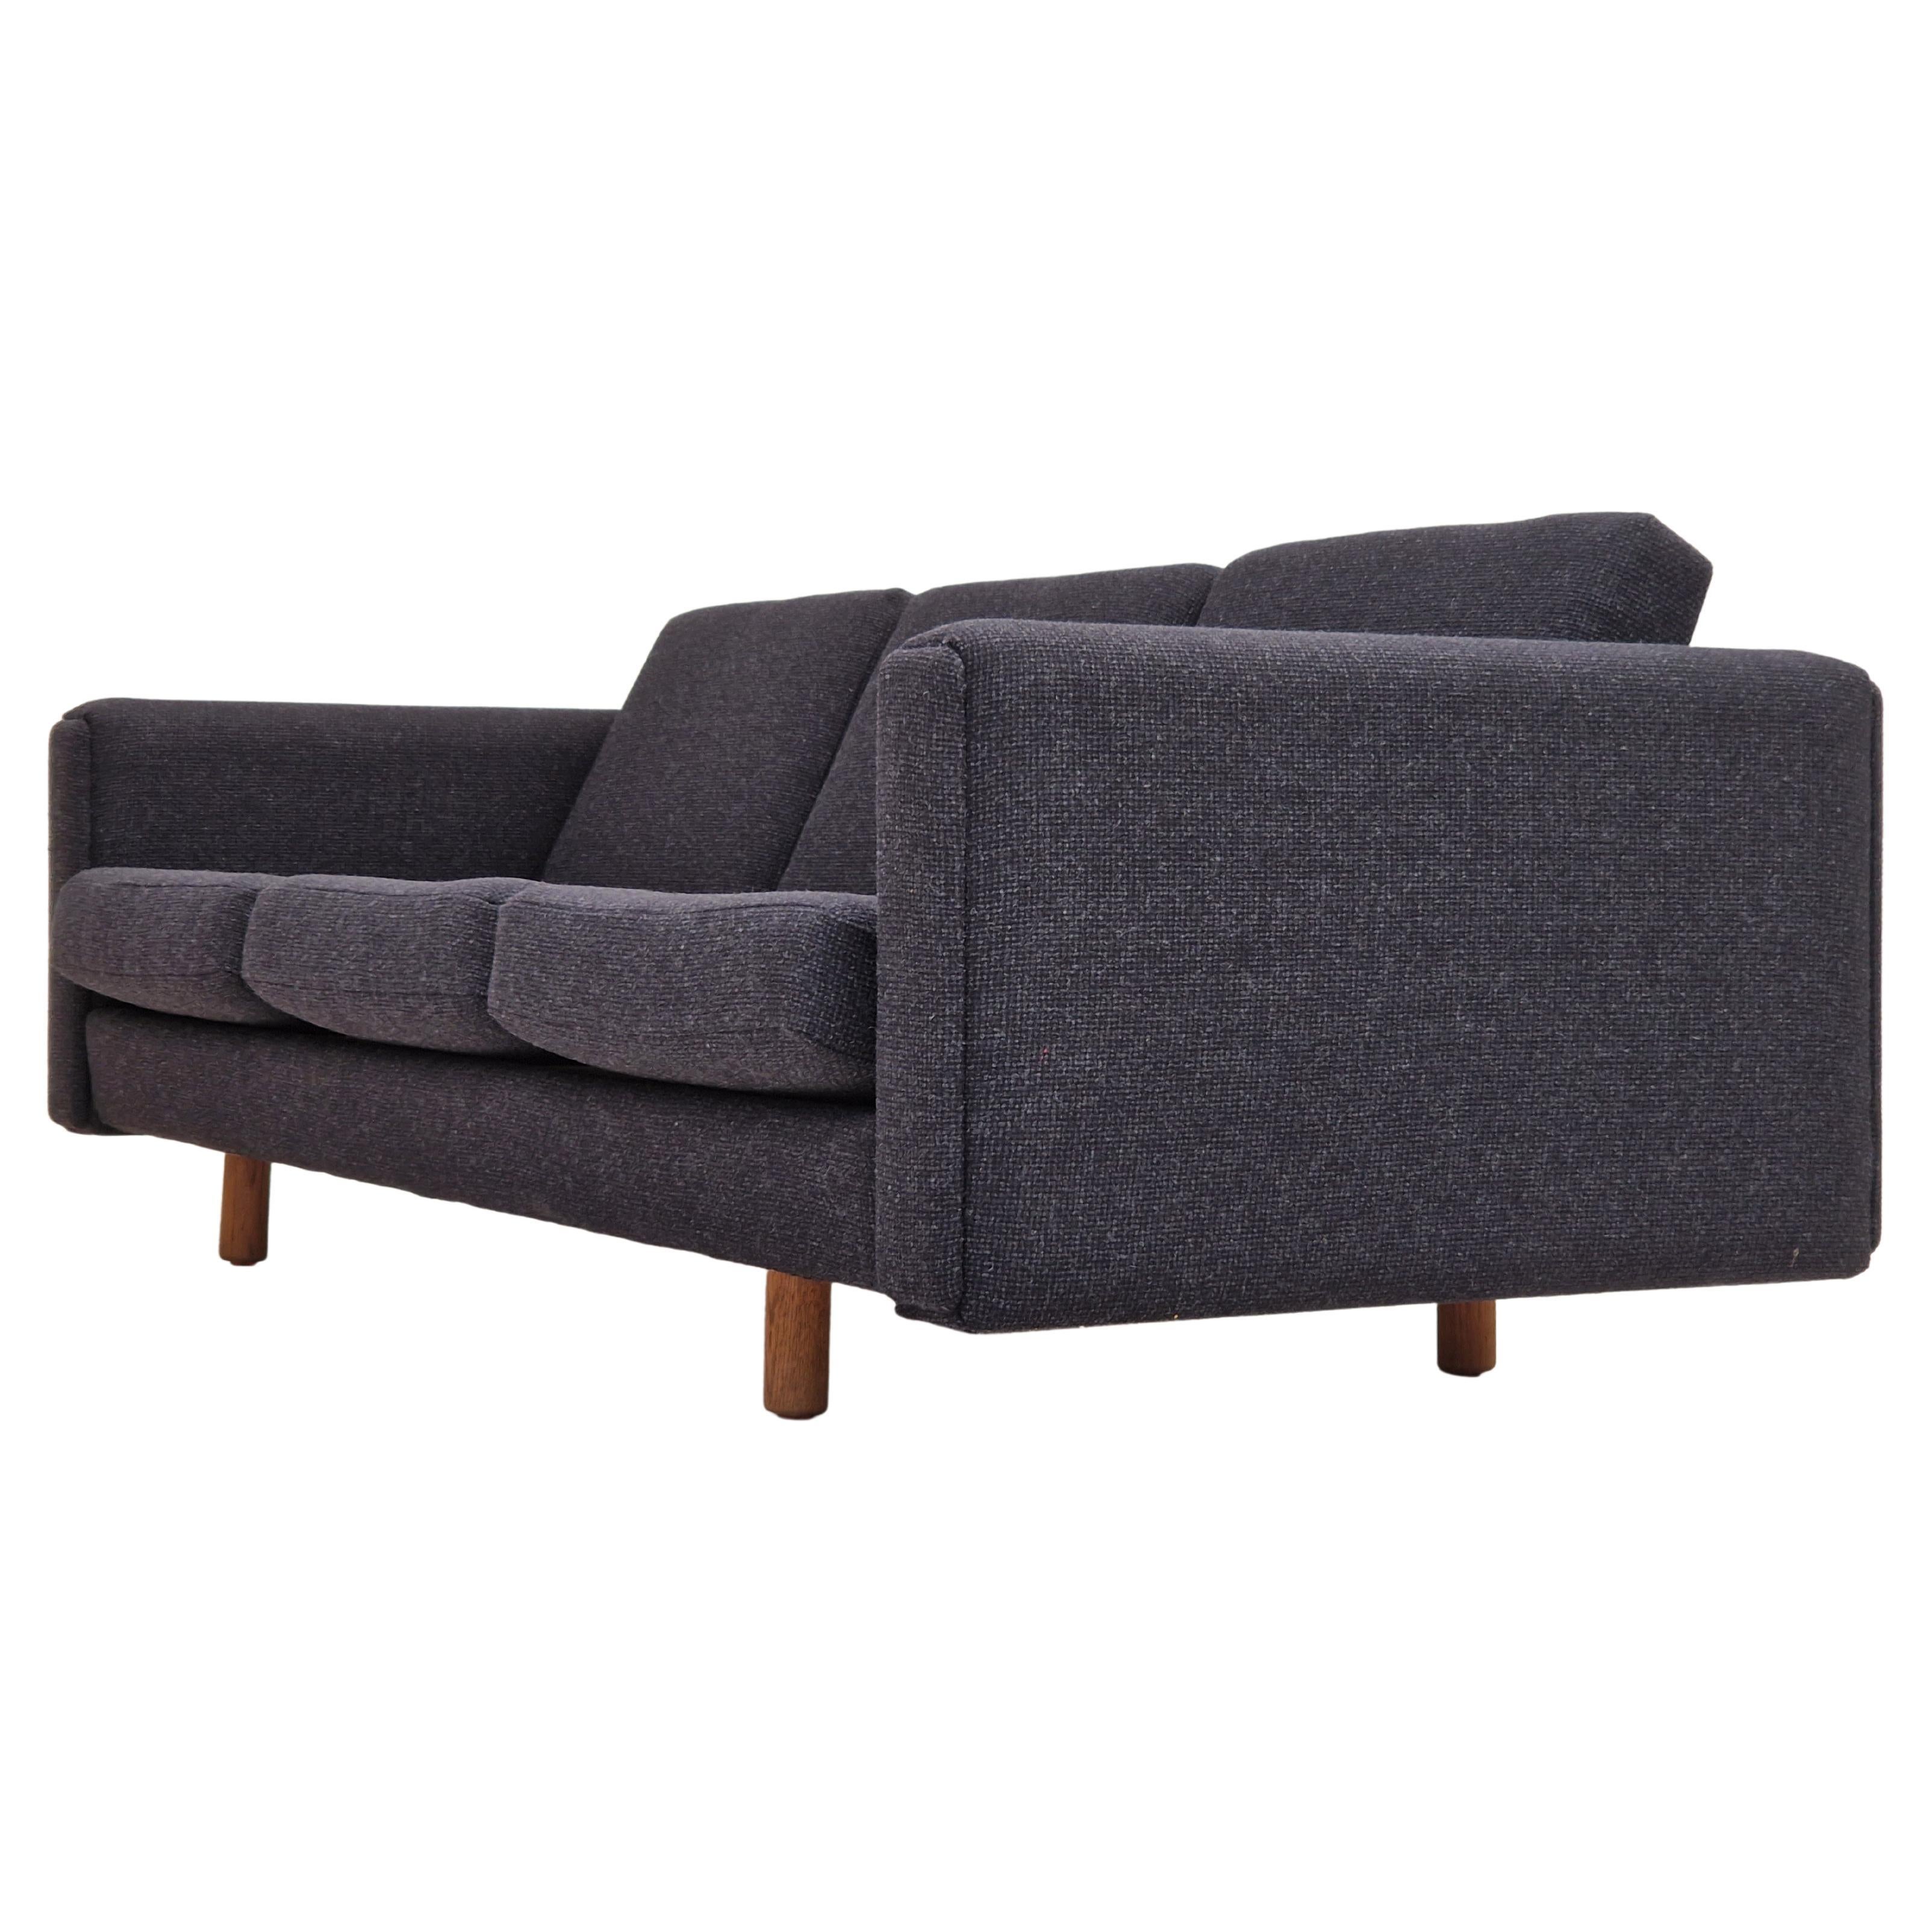 1970s, Danish design by H.J. Wegner, model GE300, reupholstered sofa.